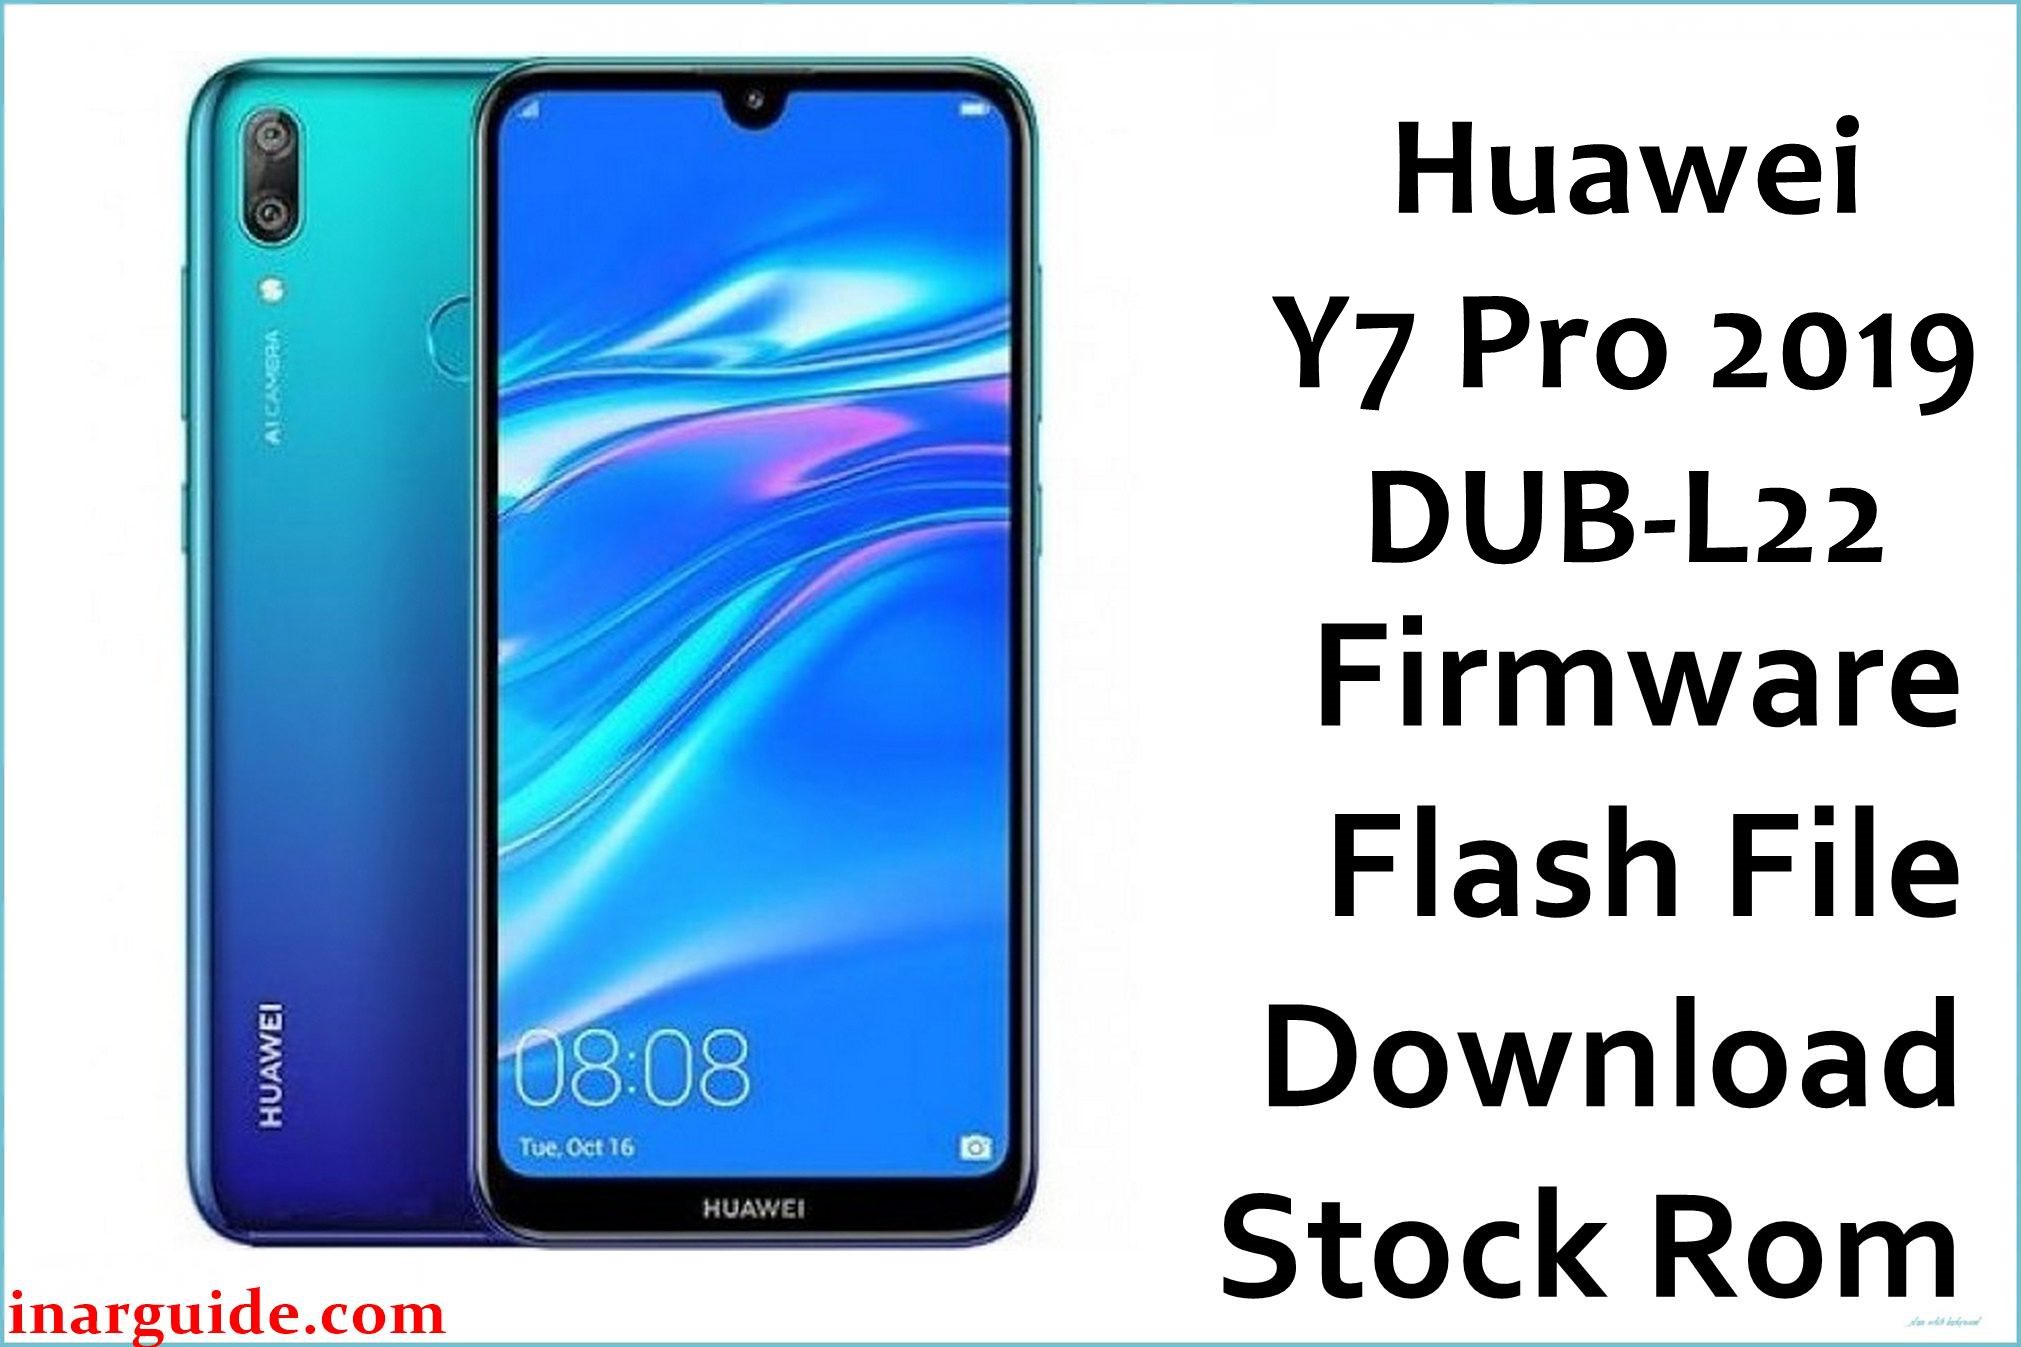 Huawei Y7 Pro 2019 DUB L22